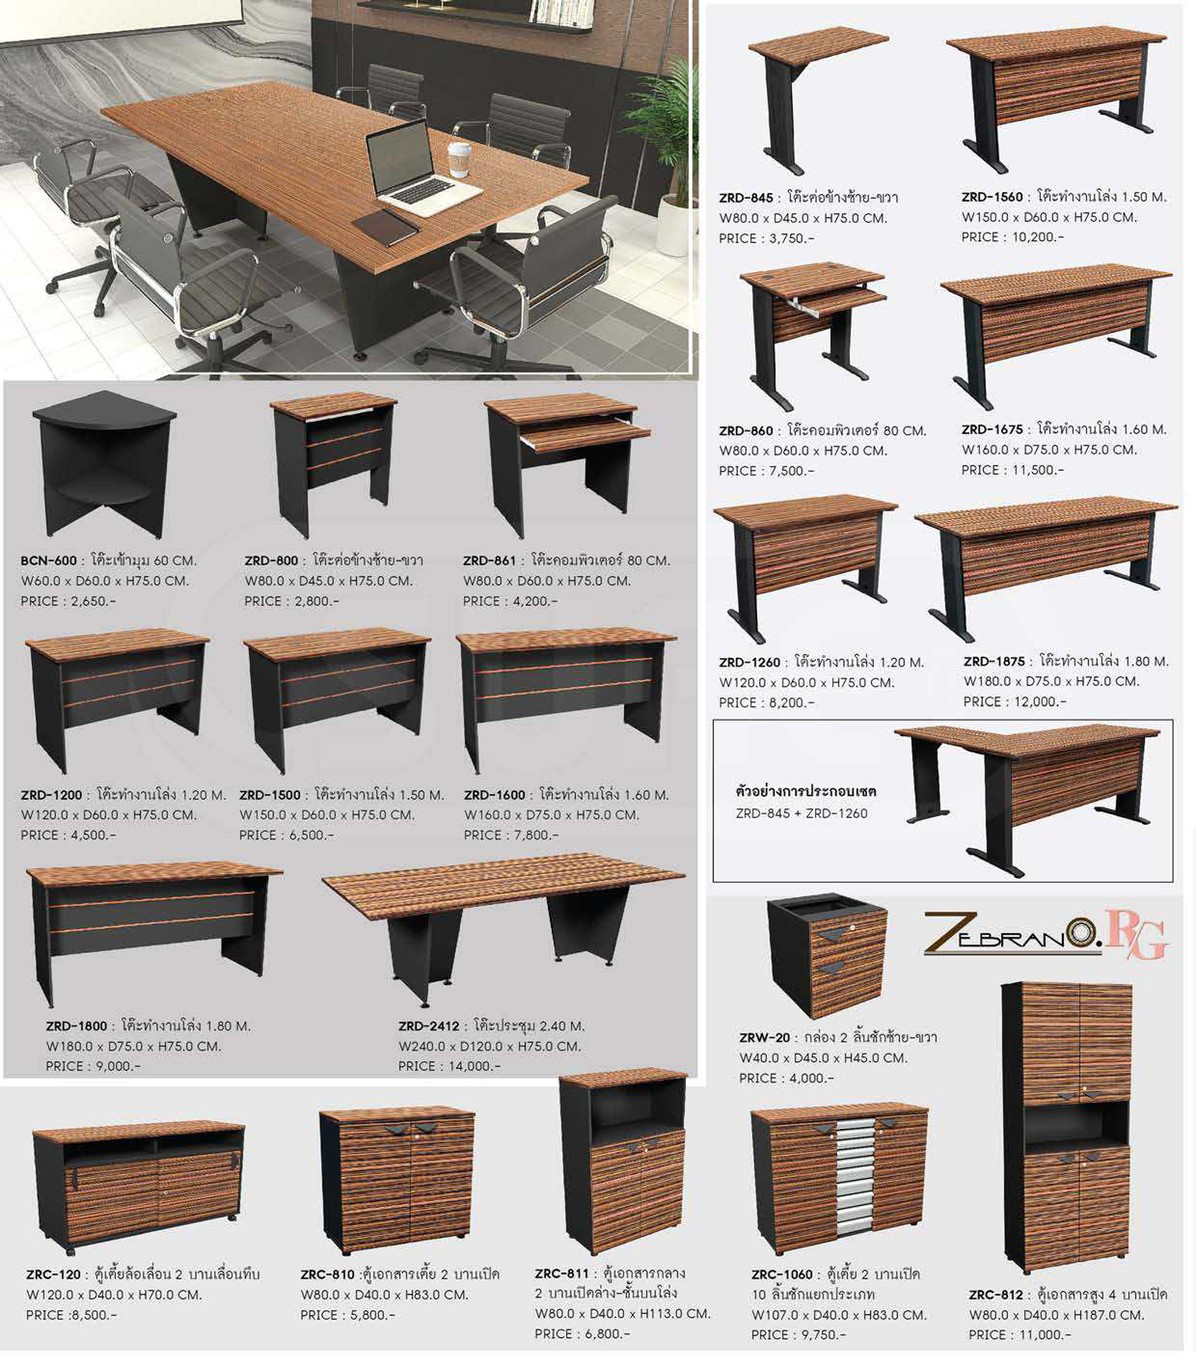 82086::BCN-600::โต๊ะเข้ามุม 60 ซม. ขนาด  ก600xล600x ส750 มม. ชัวร์ โต๊ะสำนักงานเมลามิน โต๊ะประชุม